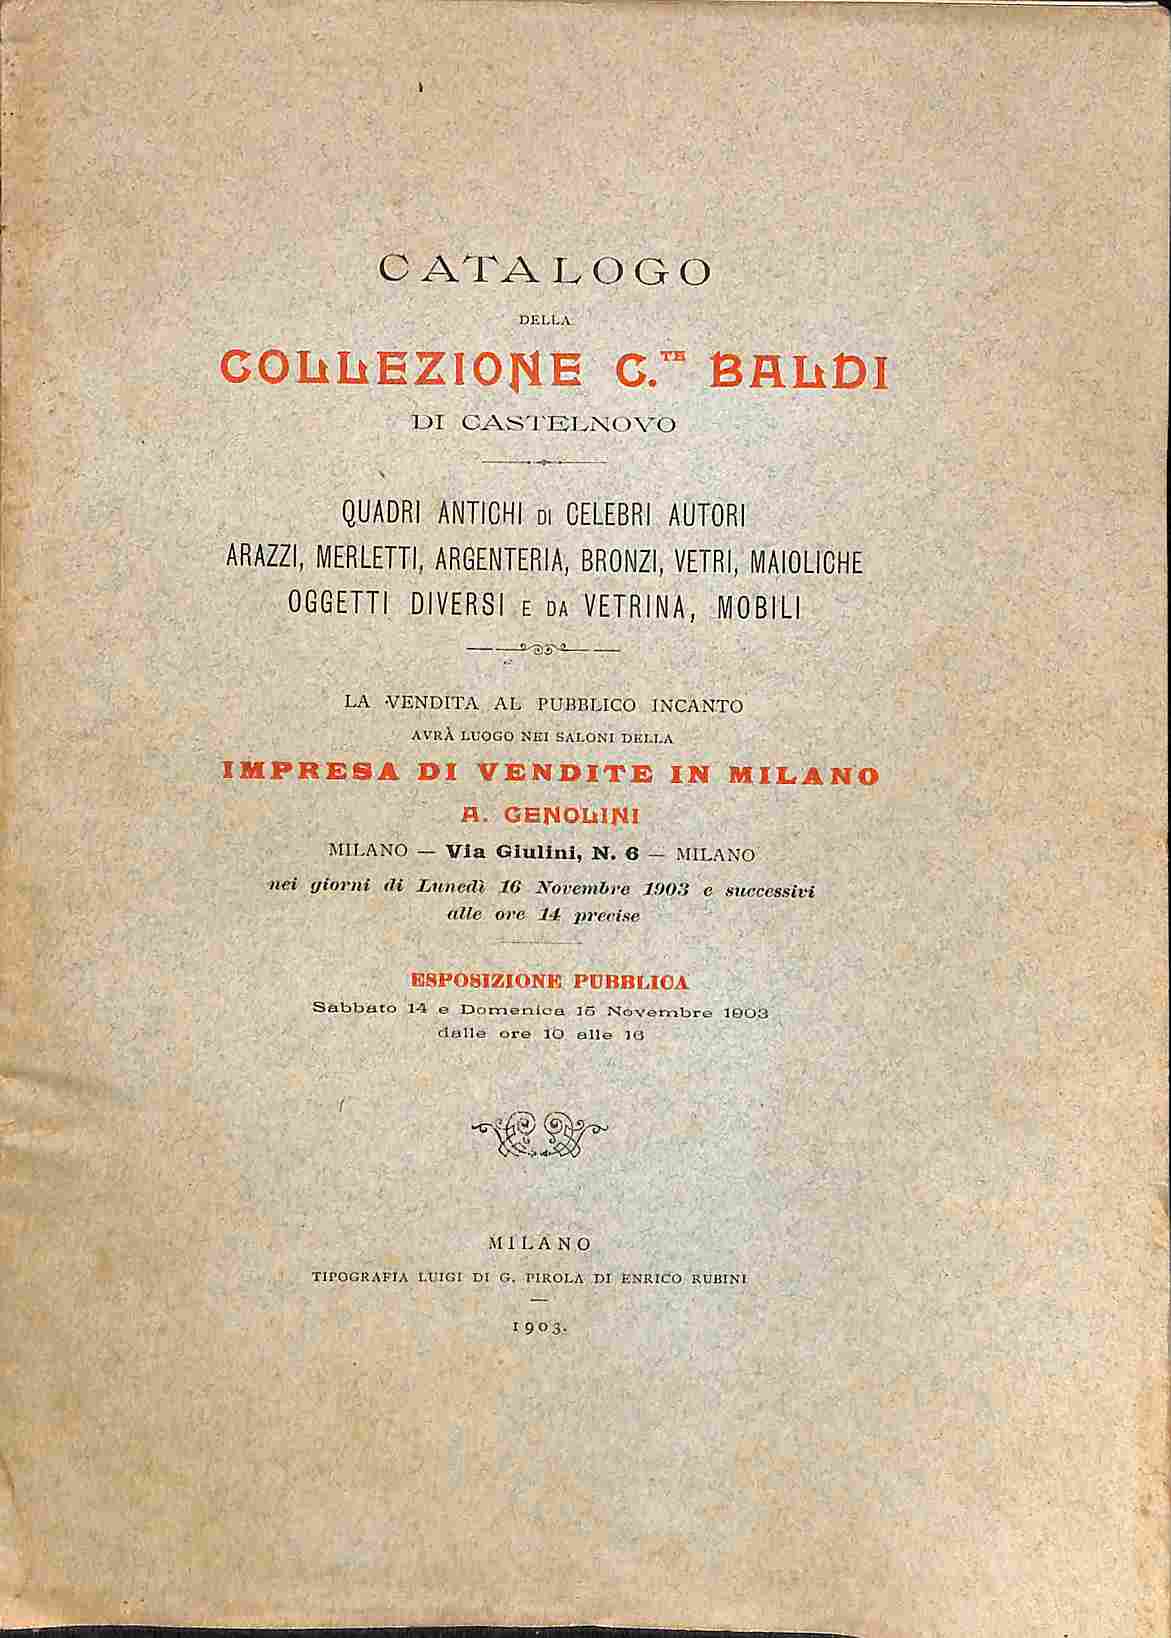 Catalogo della collezione Conte Baldi di Castelnovo...vendita al pubblico incanto...Milano